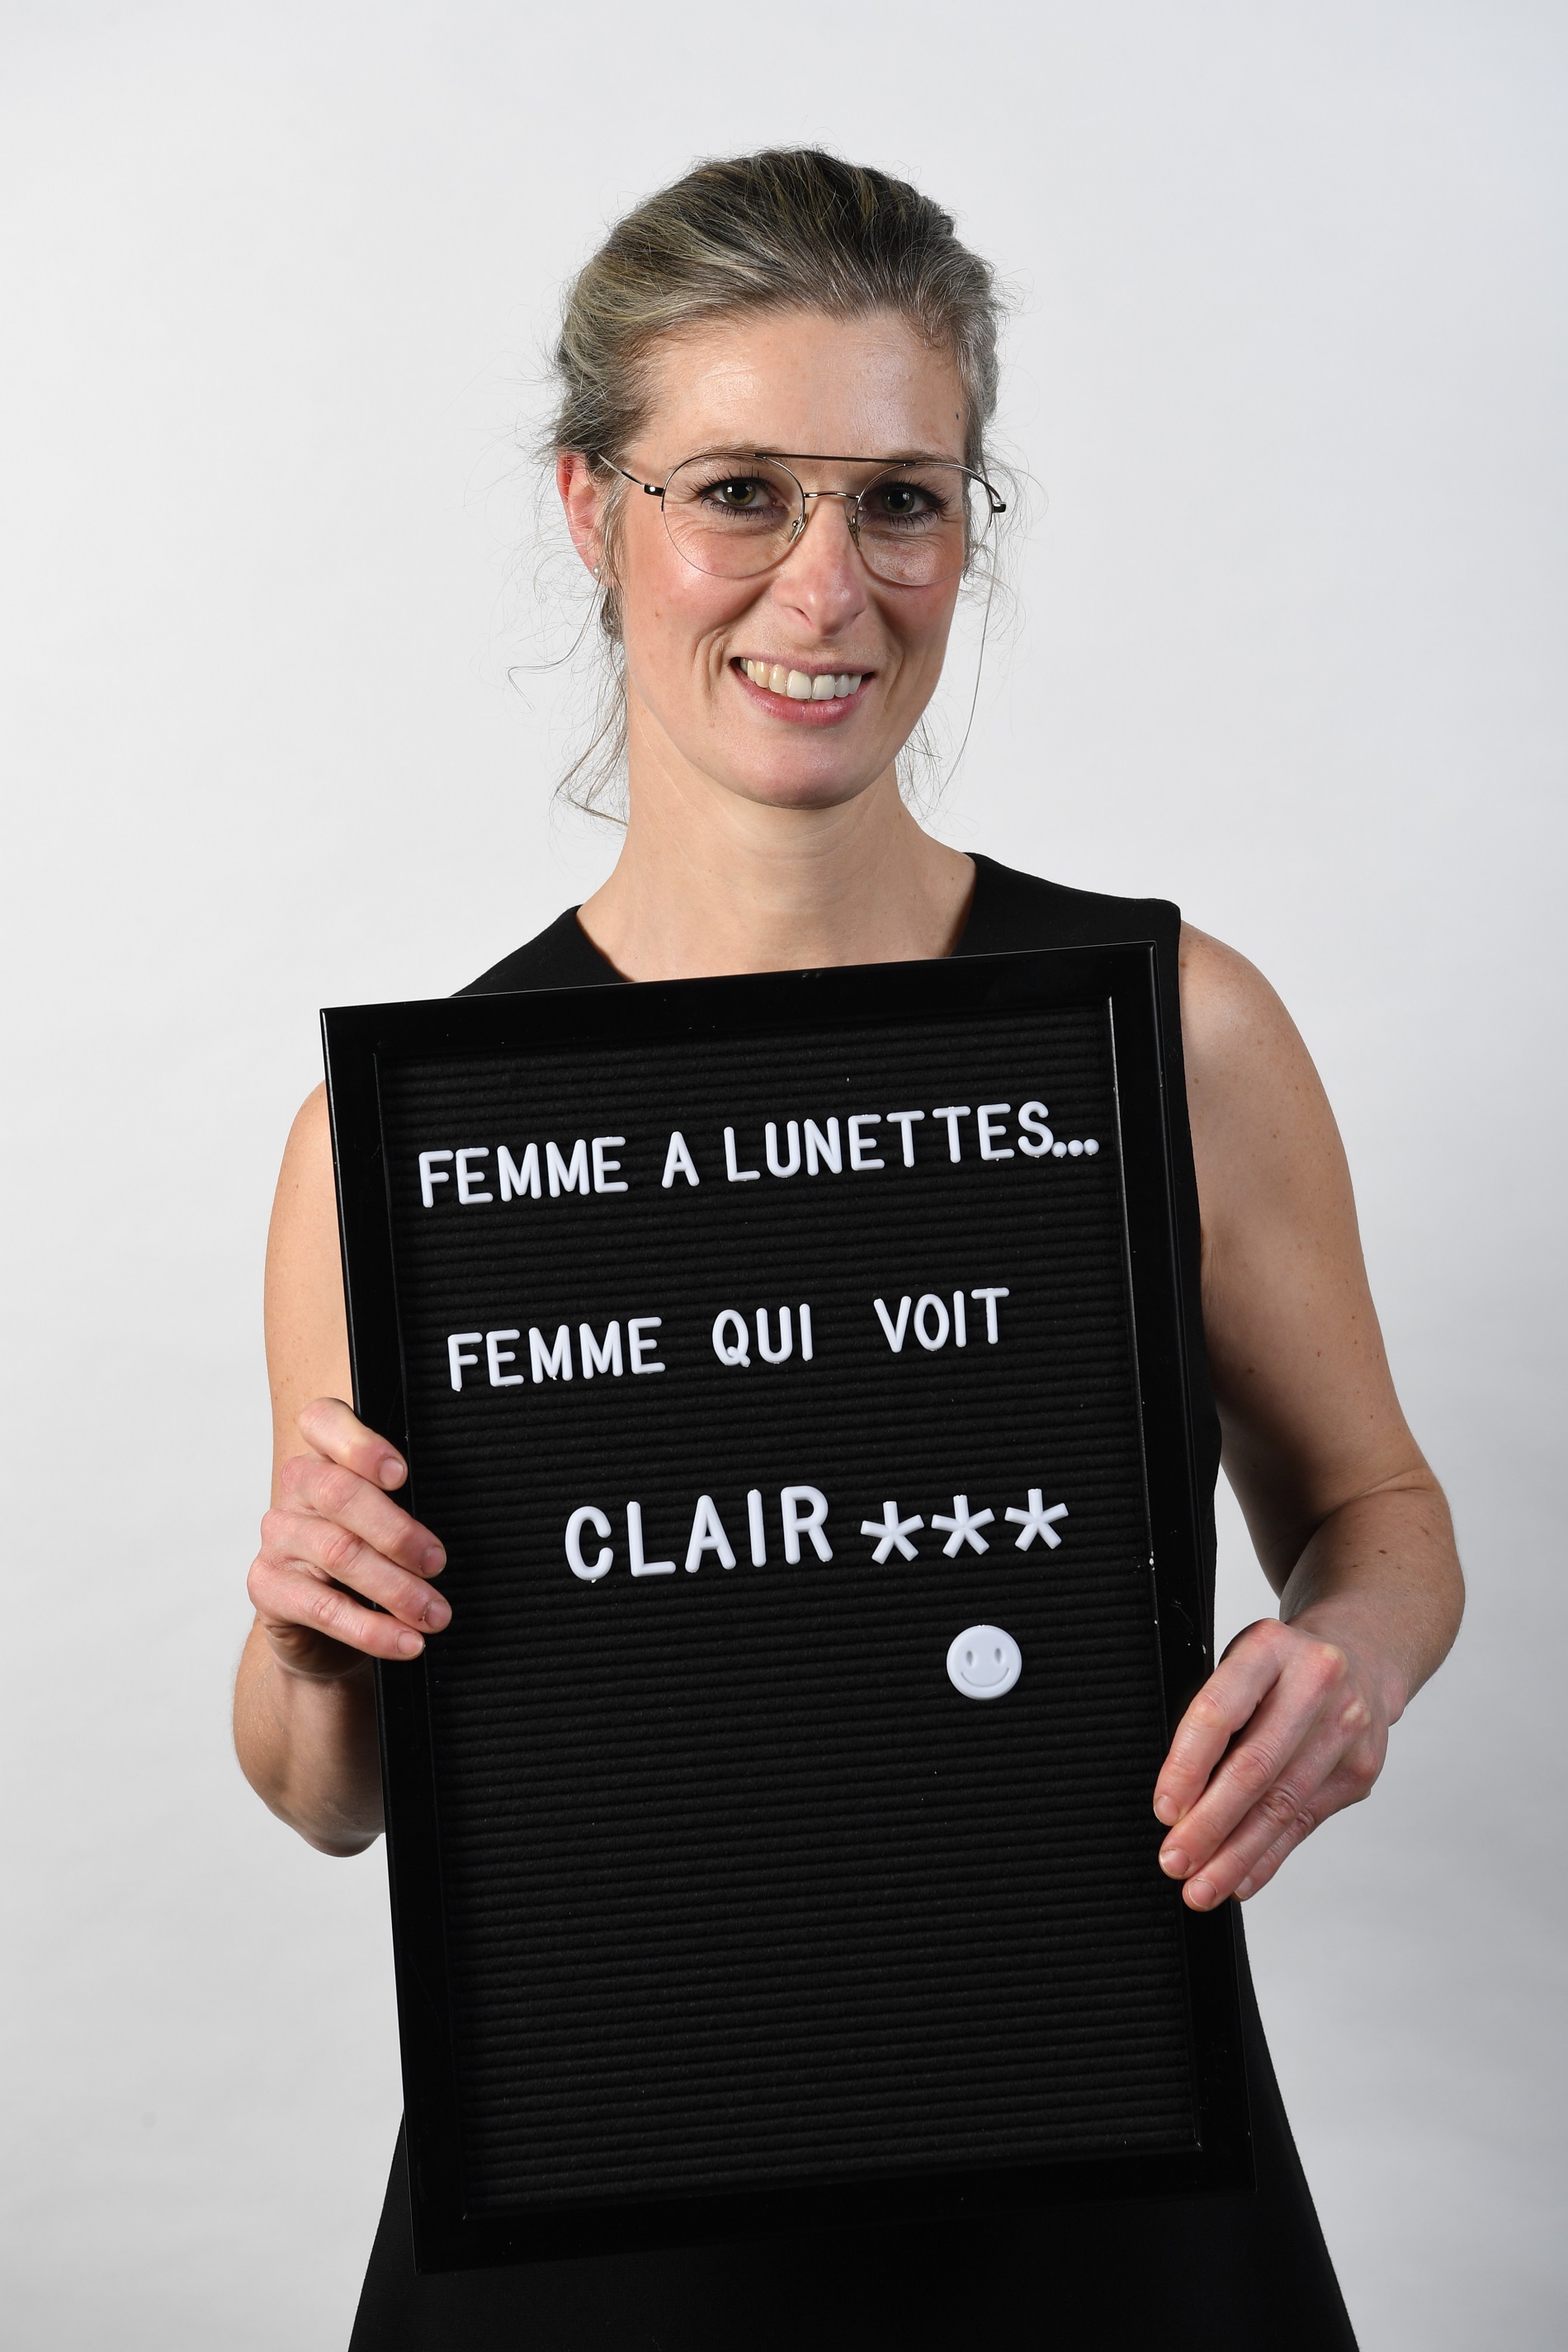 "Les Opticiens Marlière | Anne-Cécile Bouchat spécialiste de la vision"